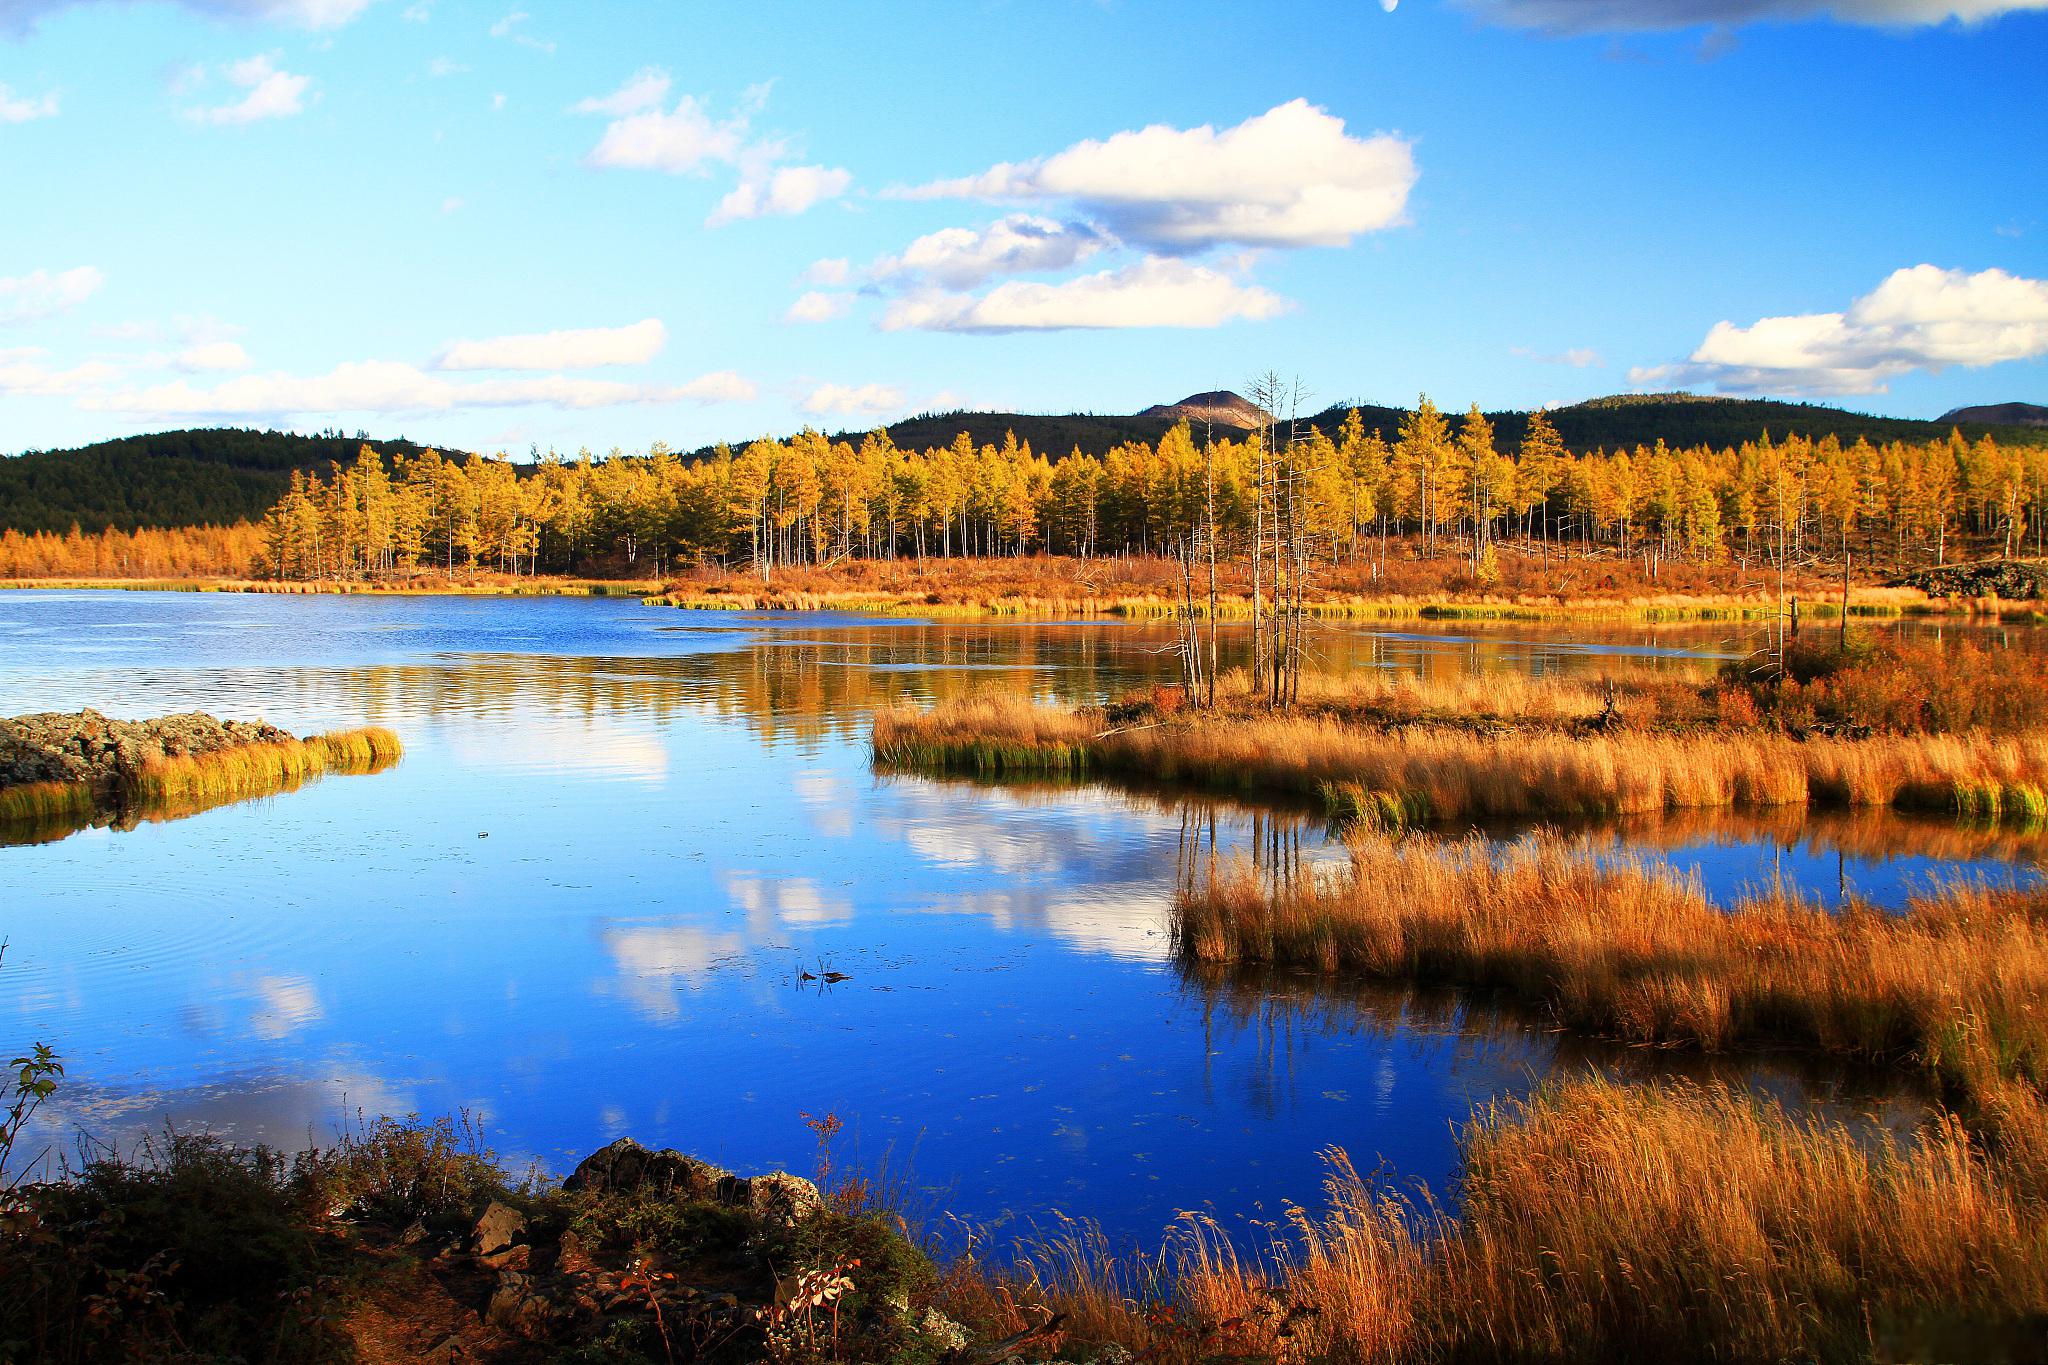 阿尔山森林公园游玩攻略 阿尔山位于内蒙古自治区兴安盟境内,以其壮丽